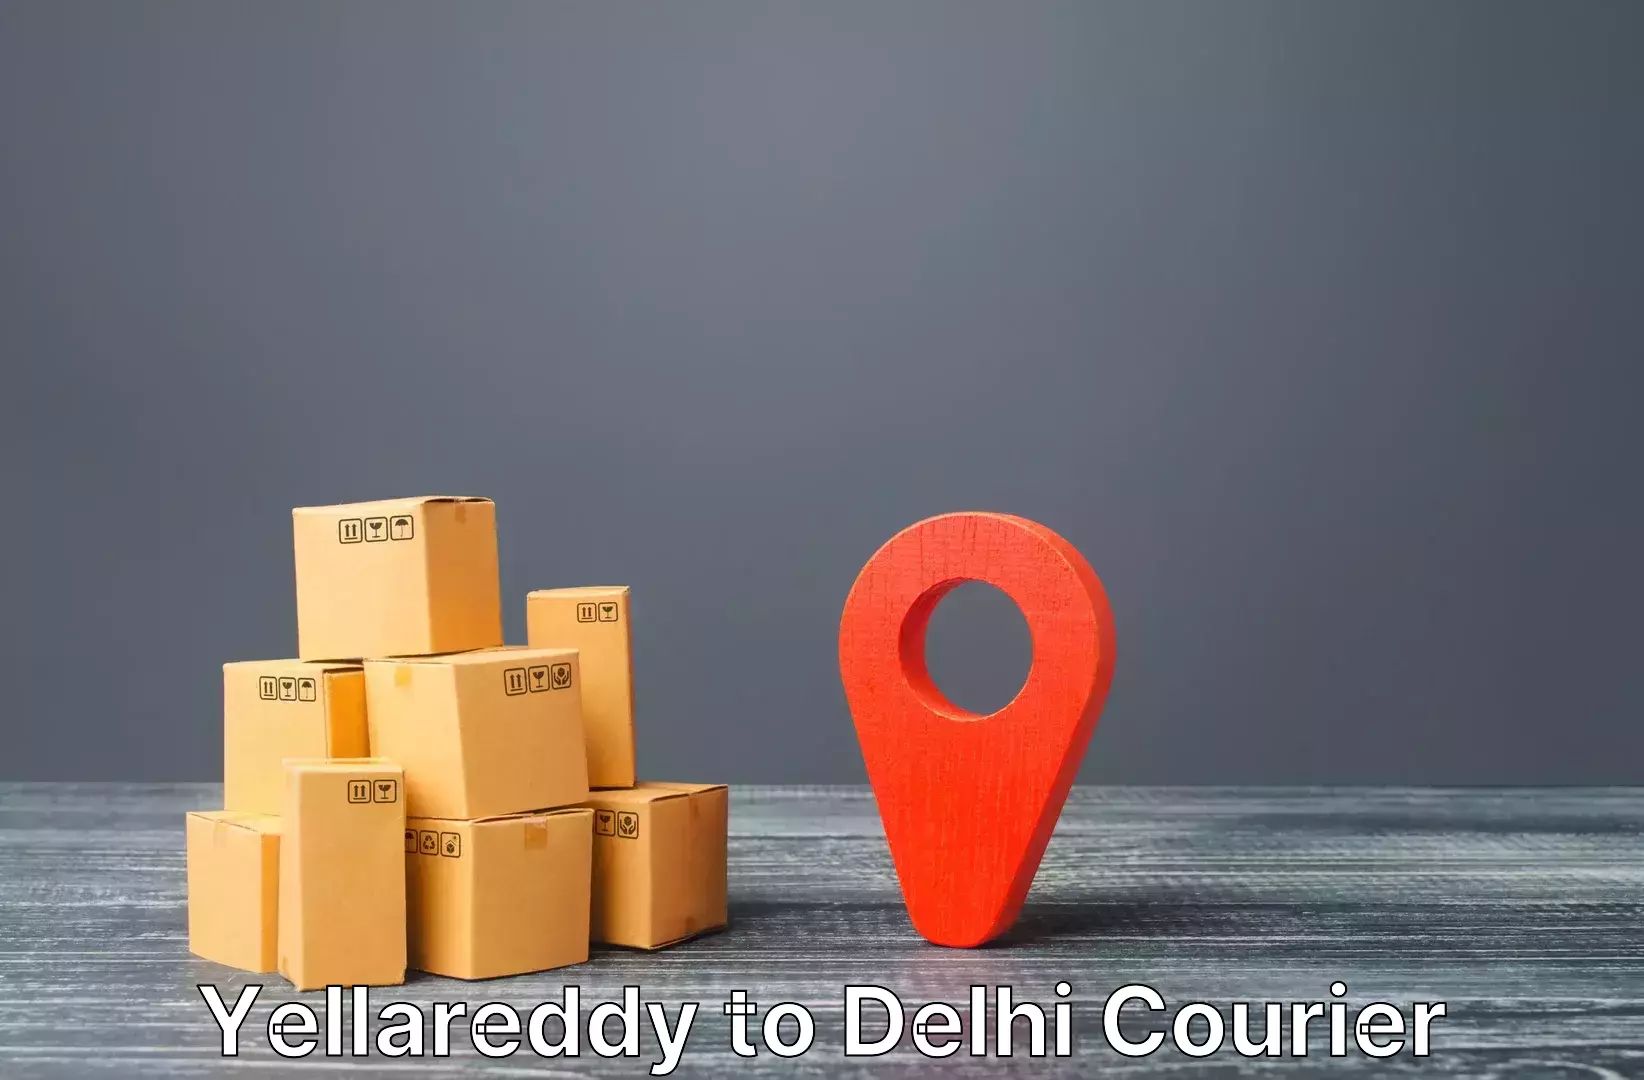 Luggage shipment specialists Yellareddy to Delhi